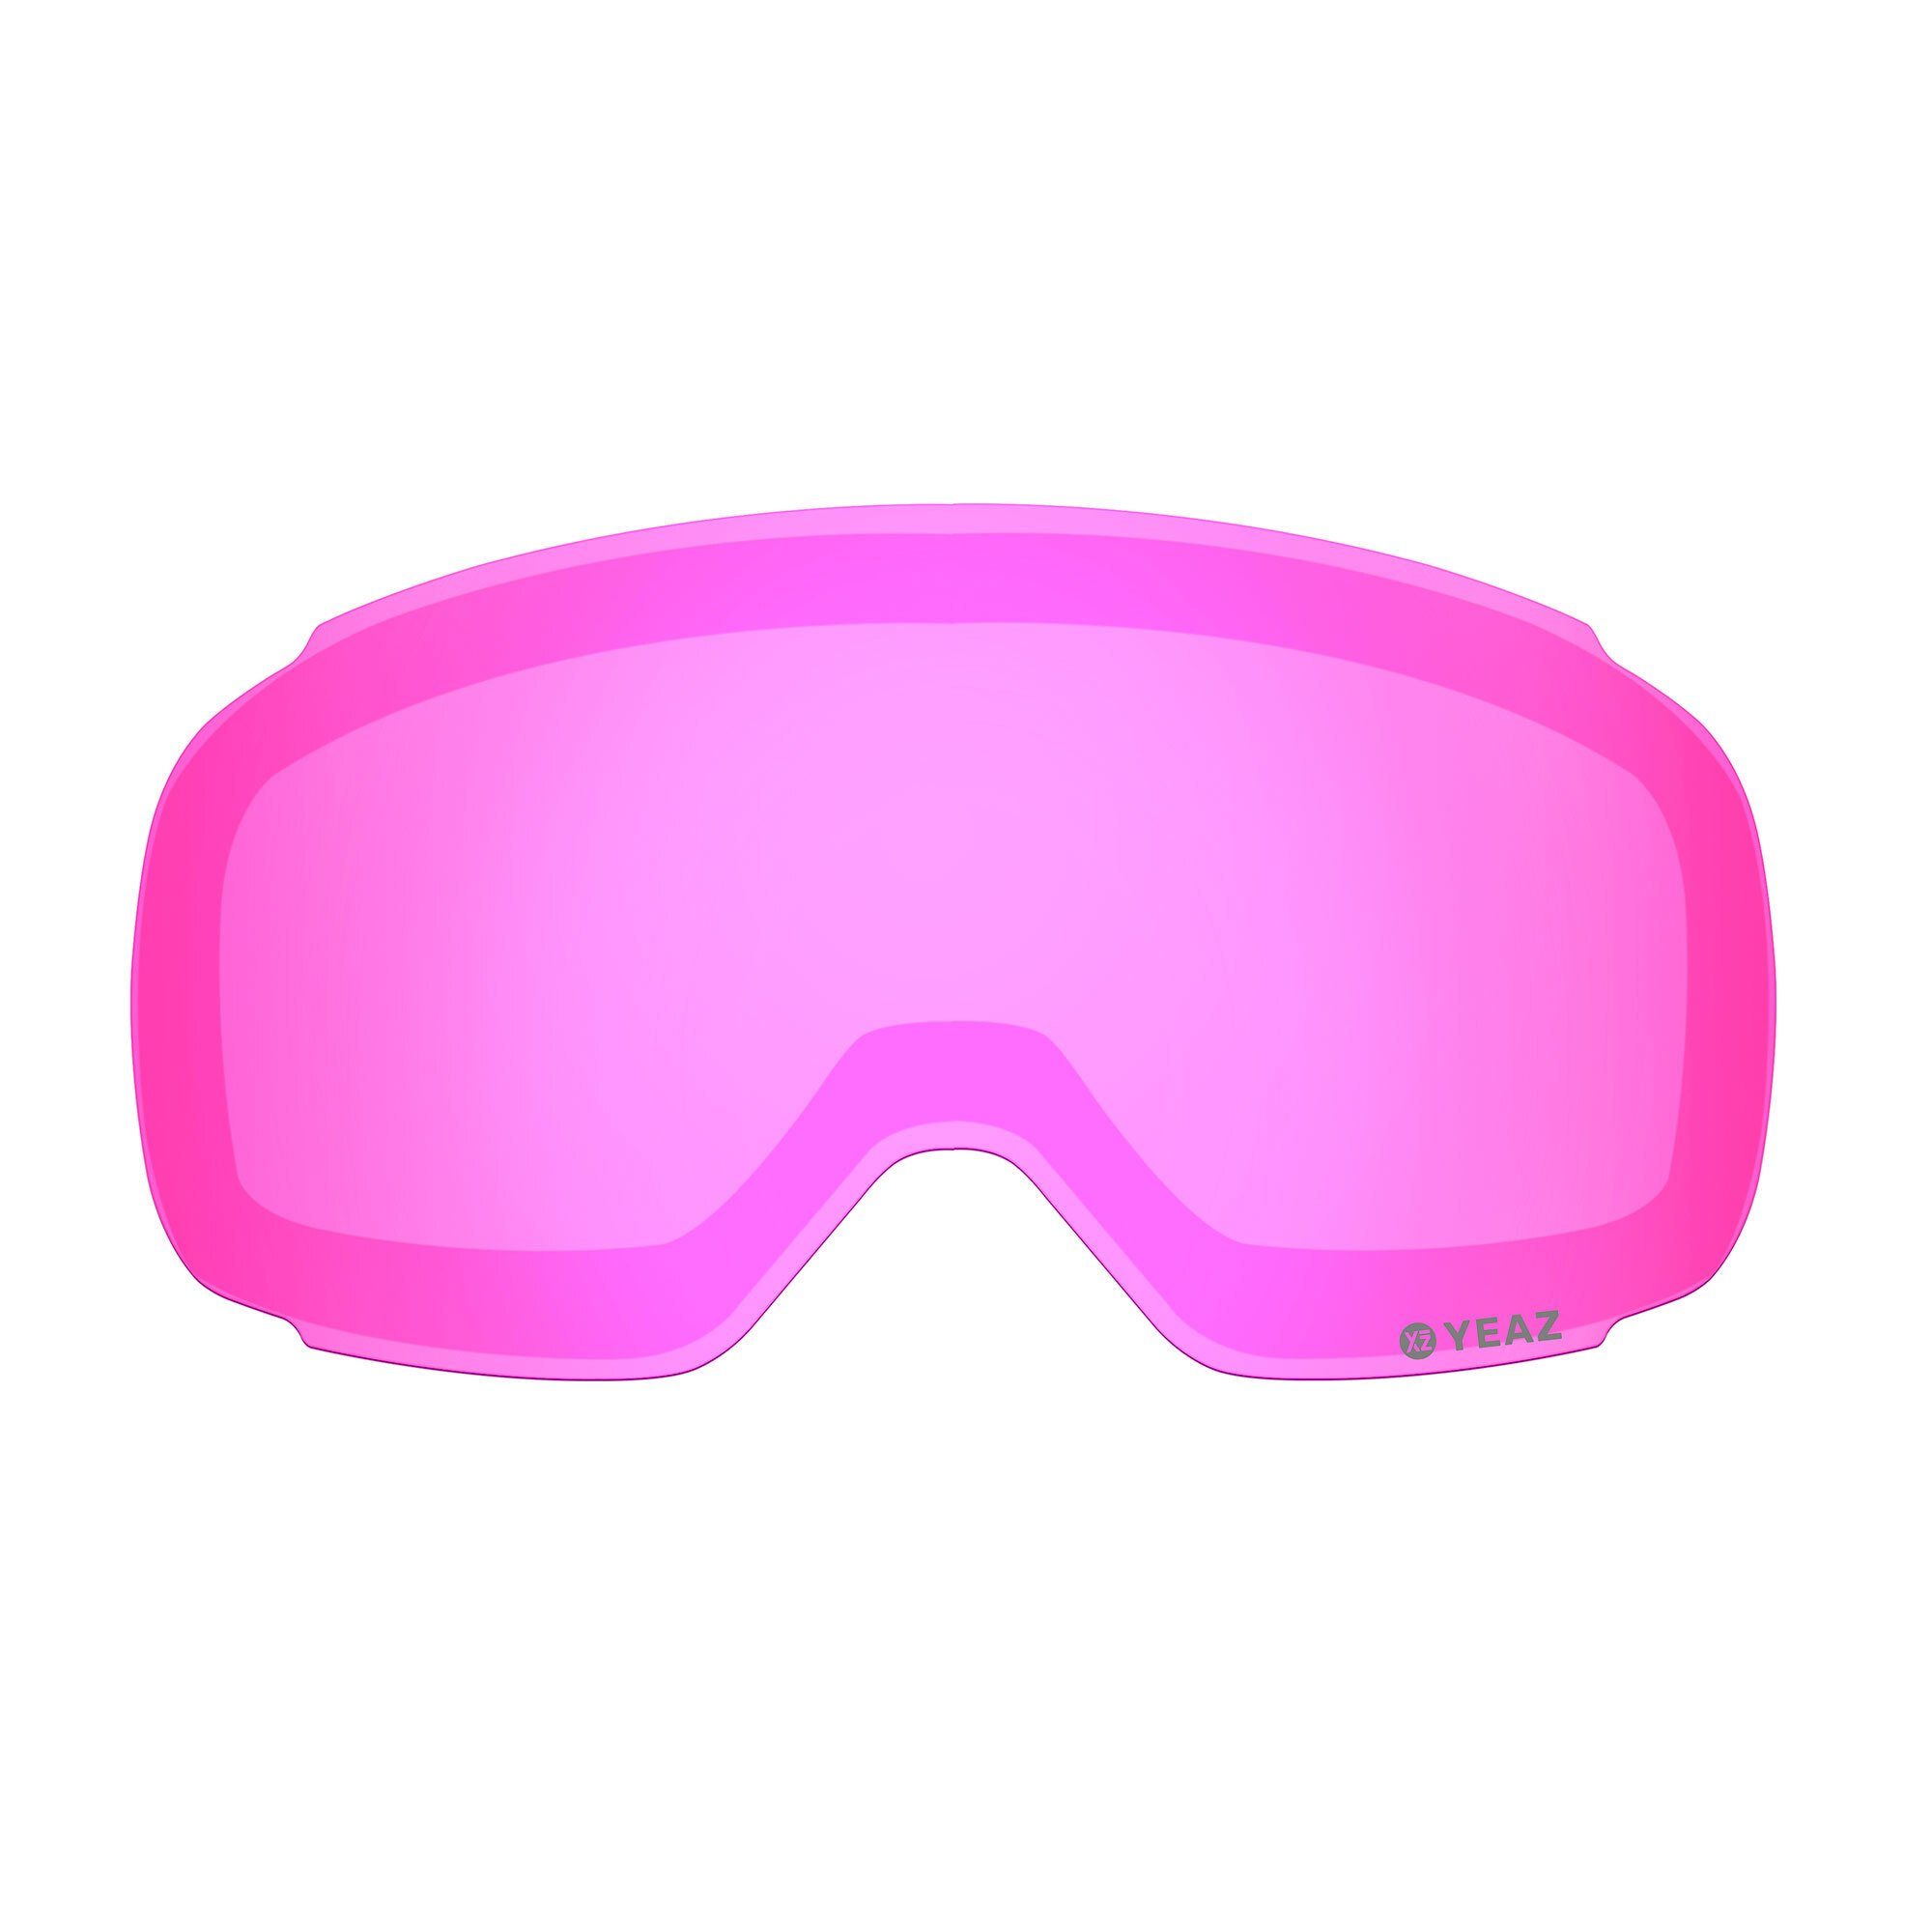 Skibrille YEAZ verspiegelt pink snowboardbrille, für Wechselglas TWEAK-X wechselglas Magnetisches ski-